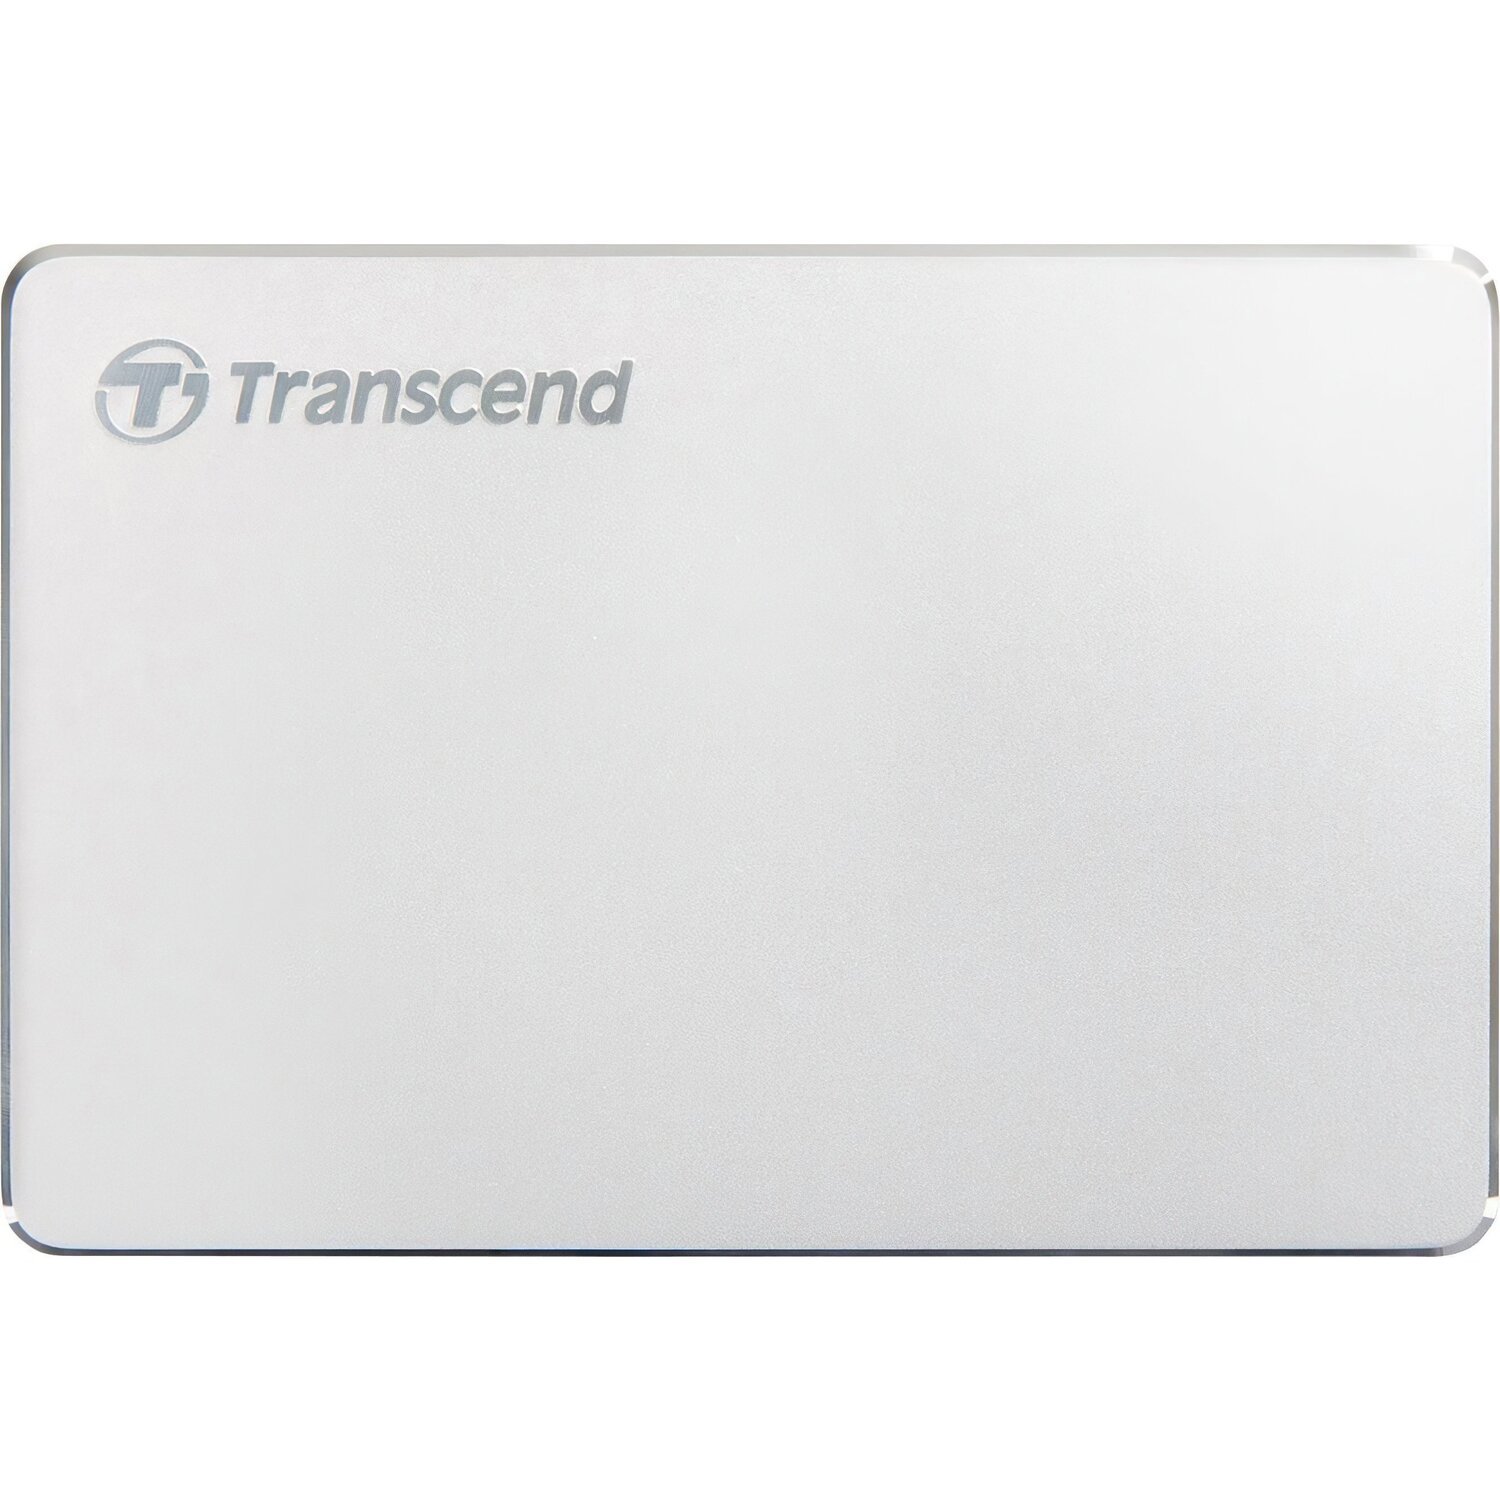 Жесткий диск TRANSCEND StoreJet 2.5 USB 3.1/Type-C 2TB MC Silver (TS2TSJ25C3S) фото 